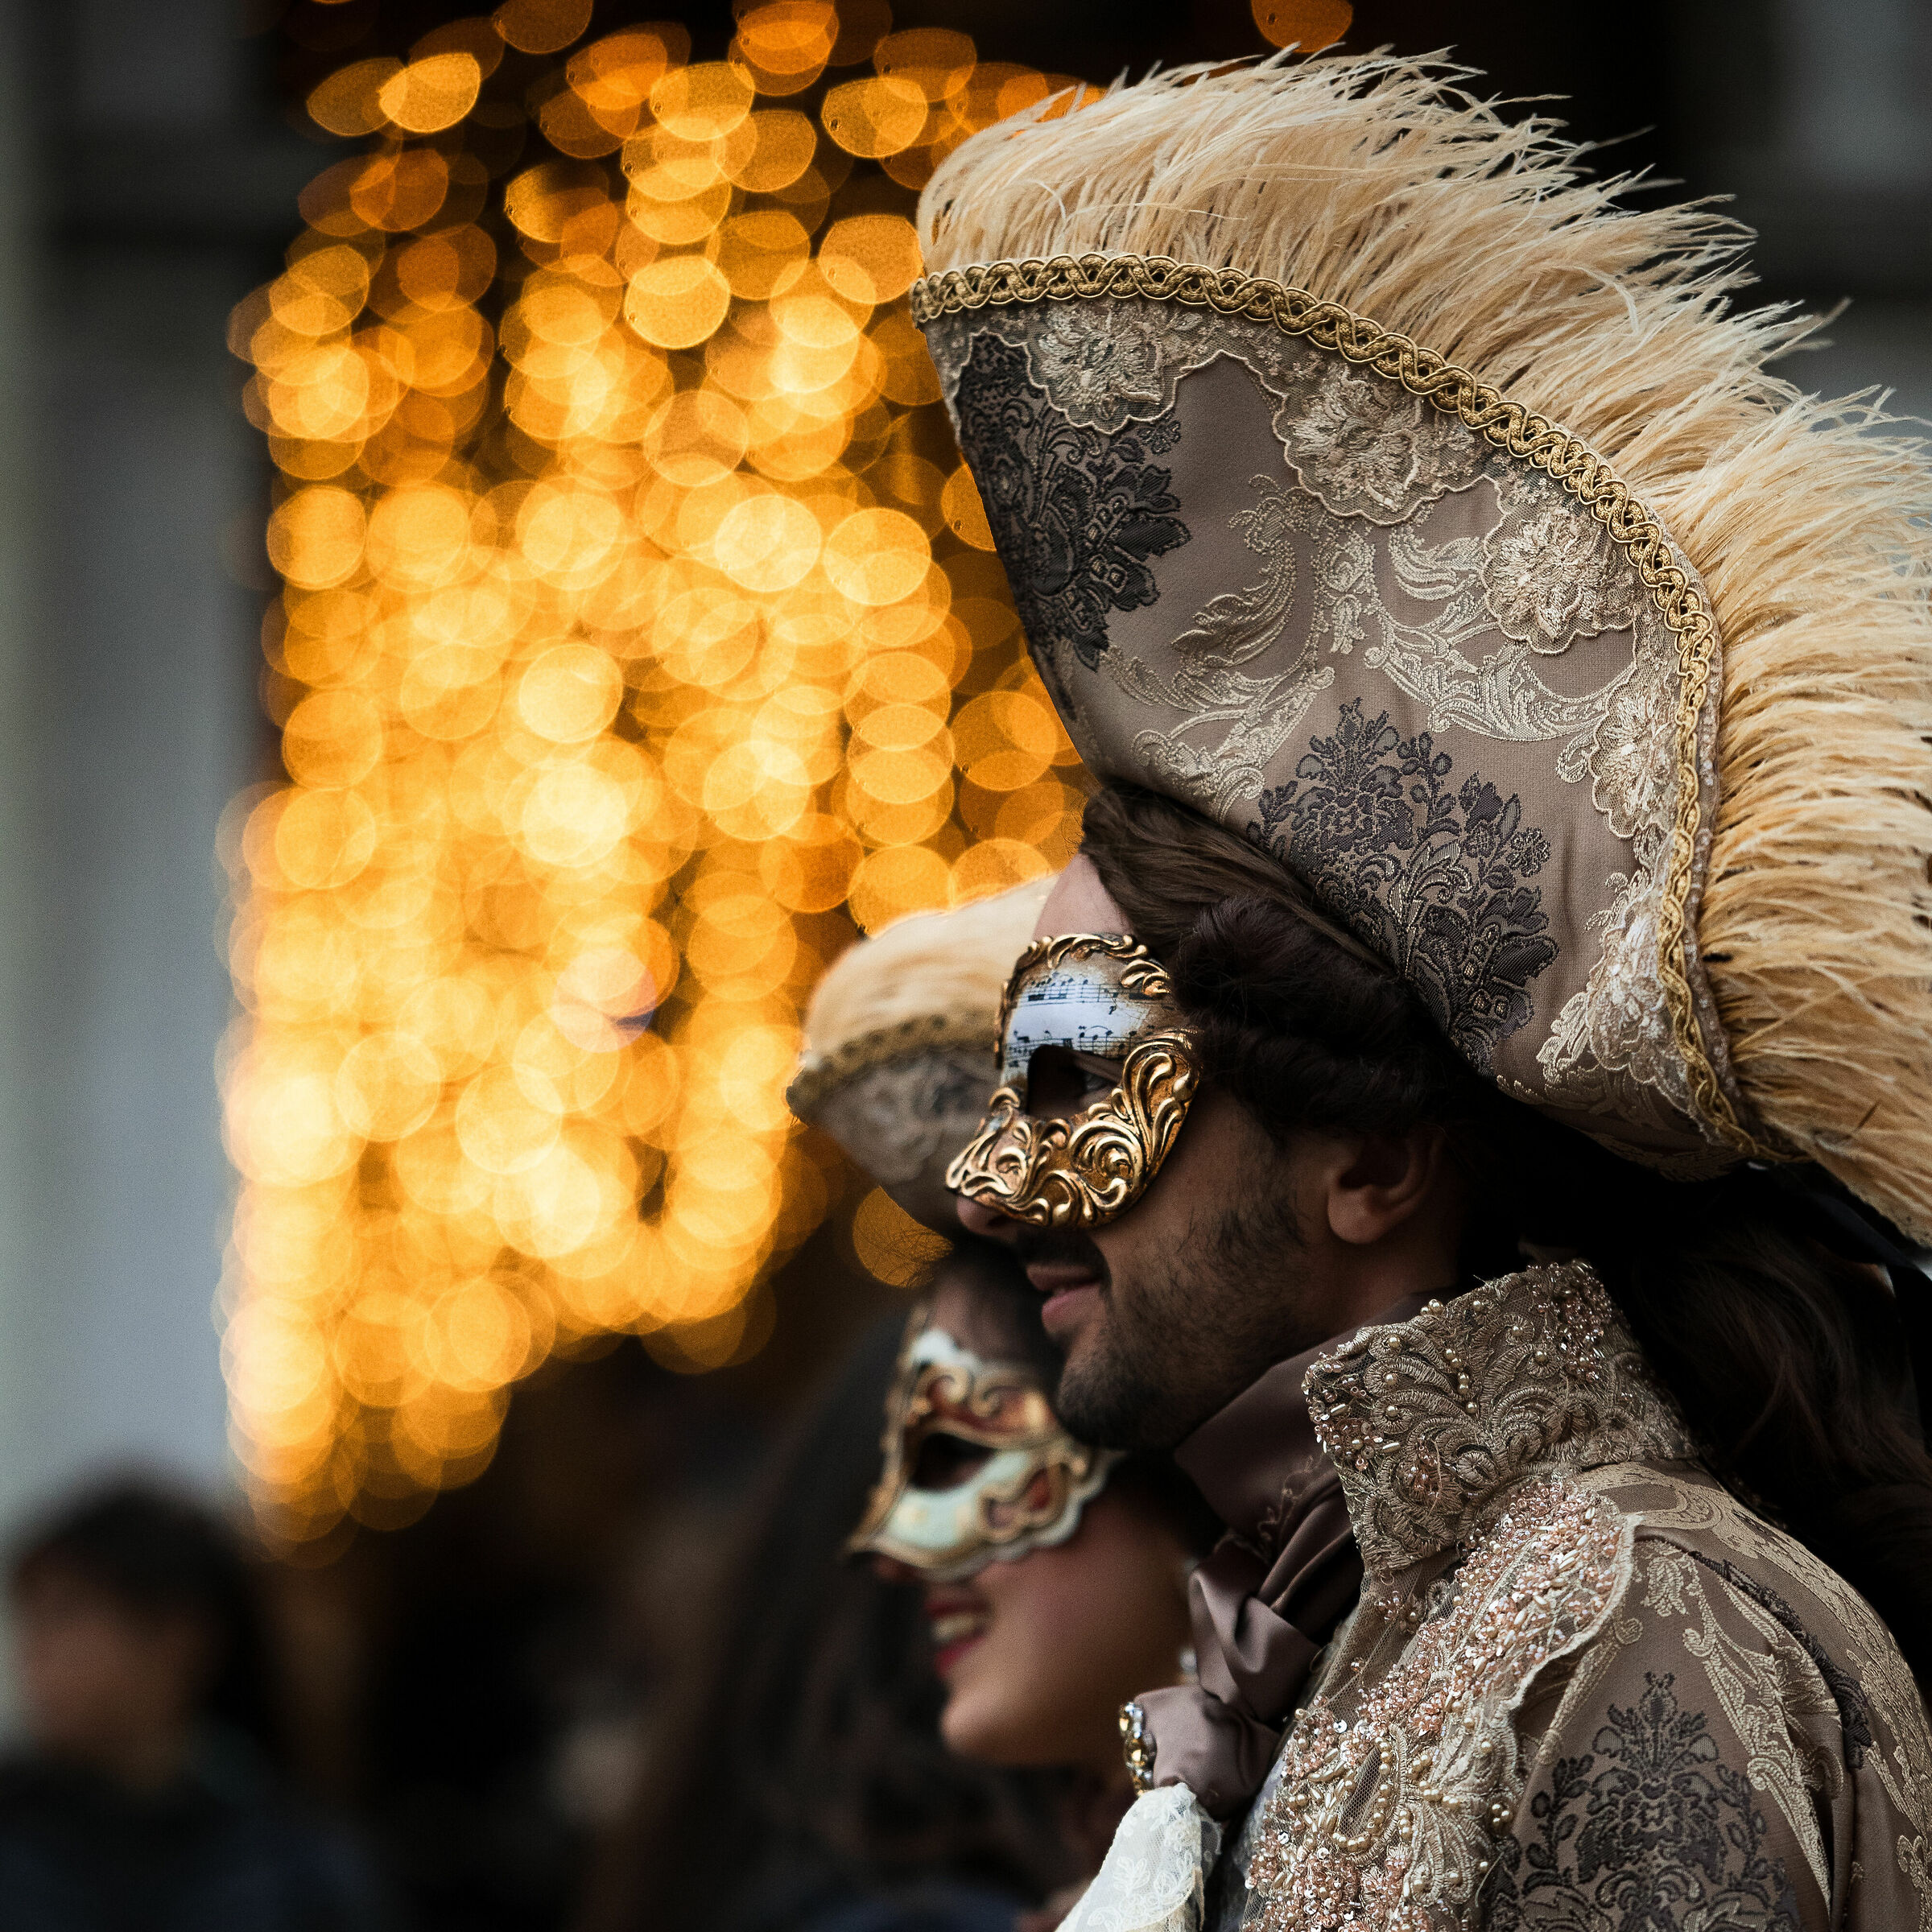 Masks in Venice ...